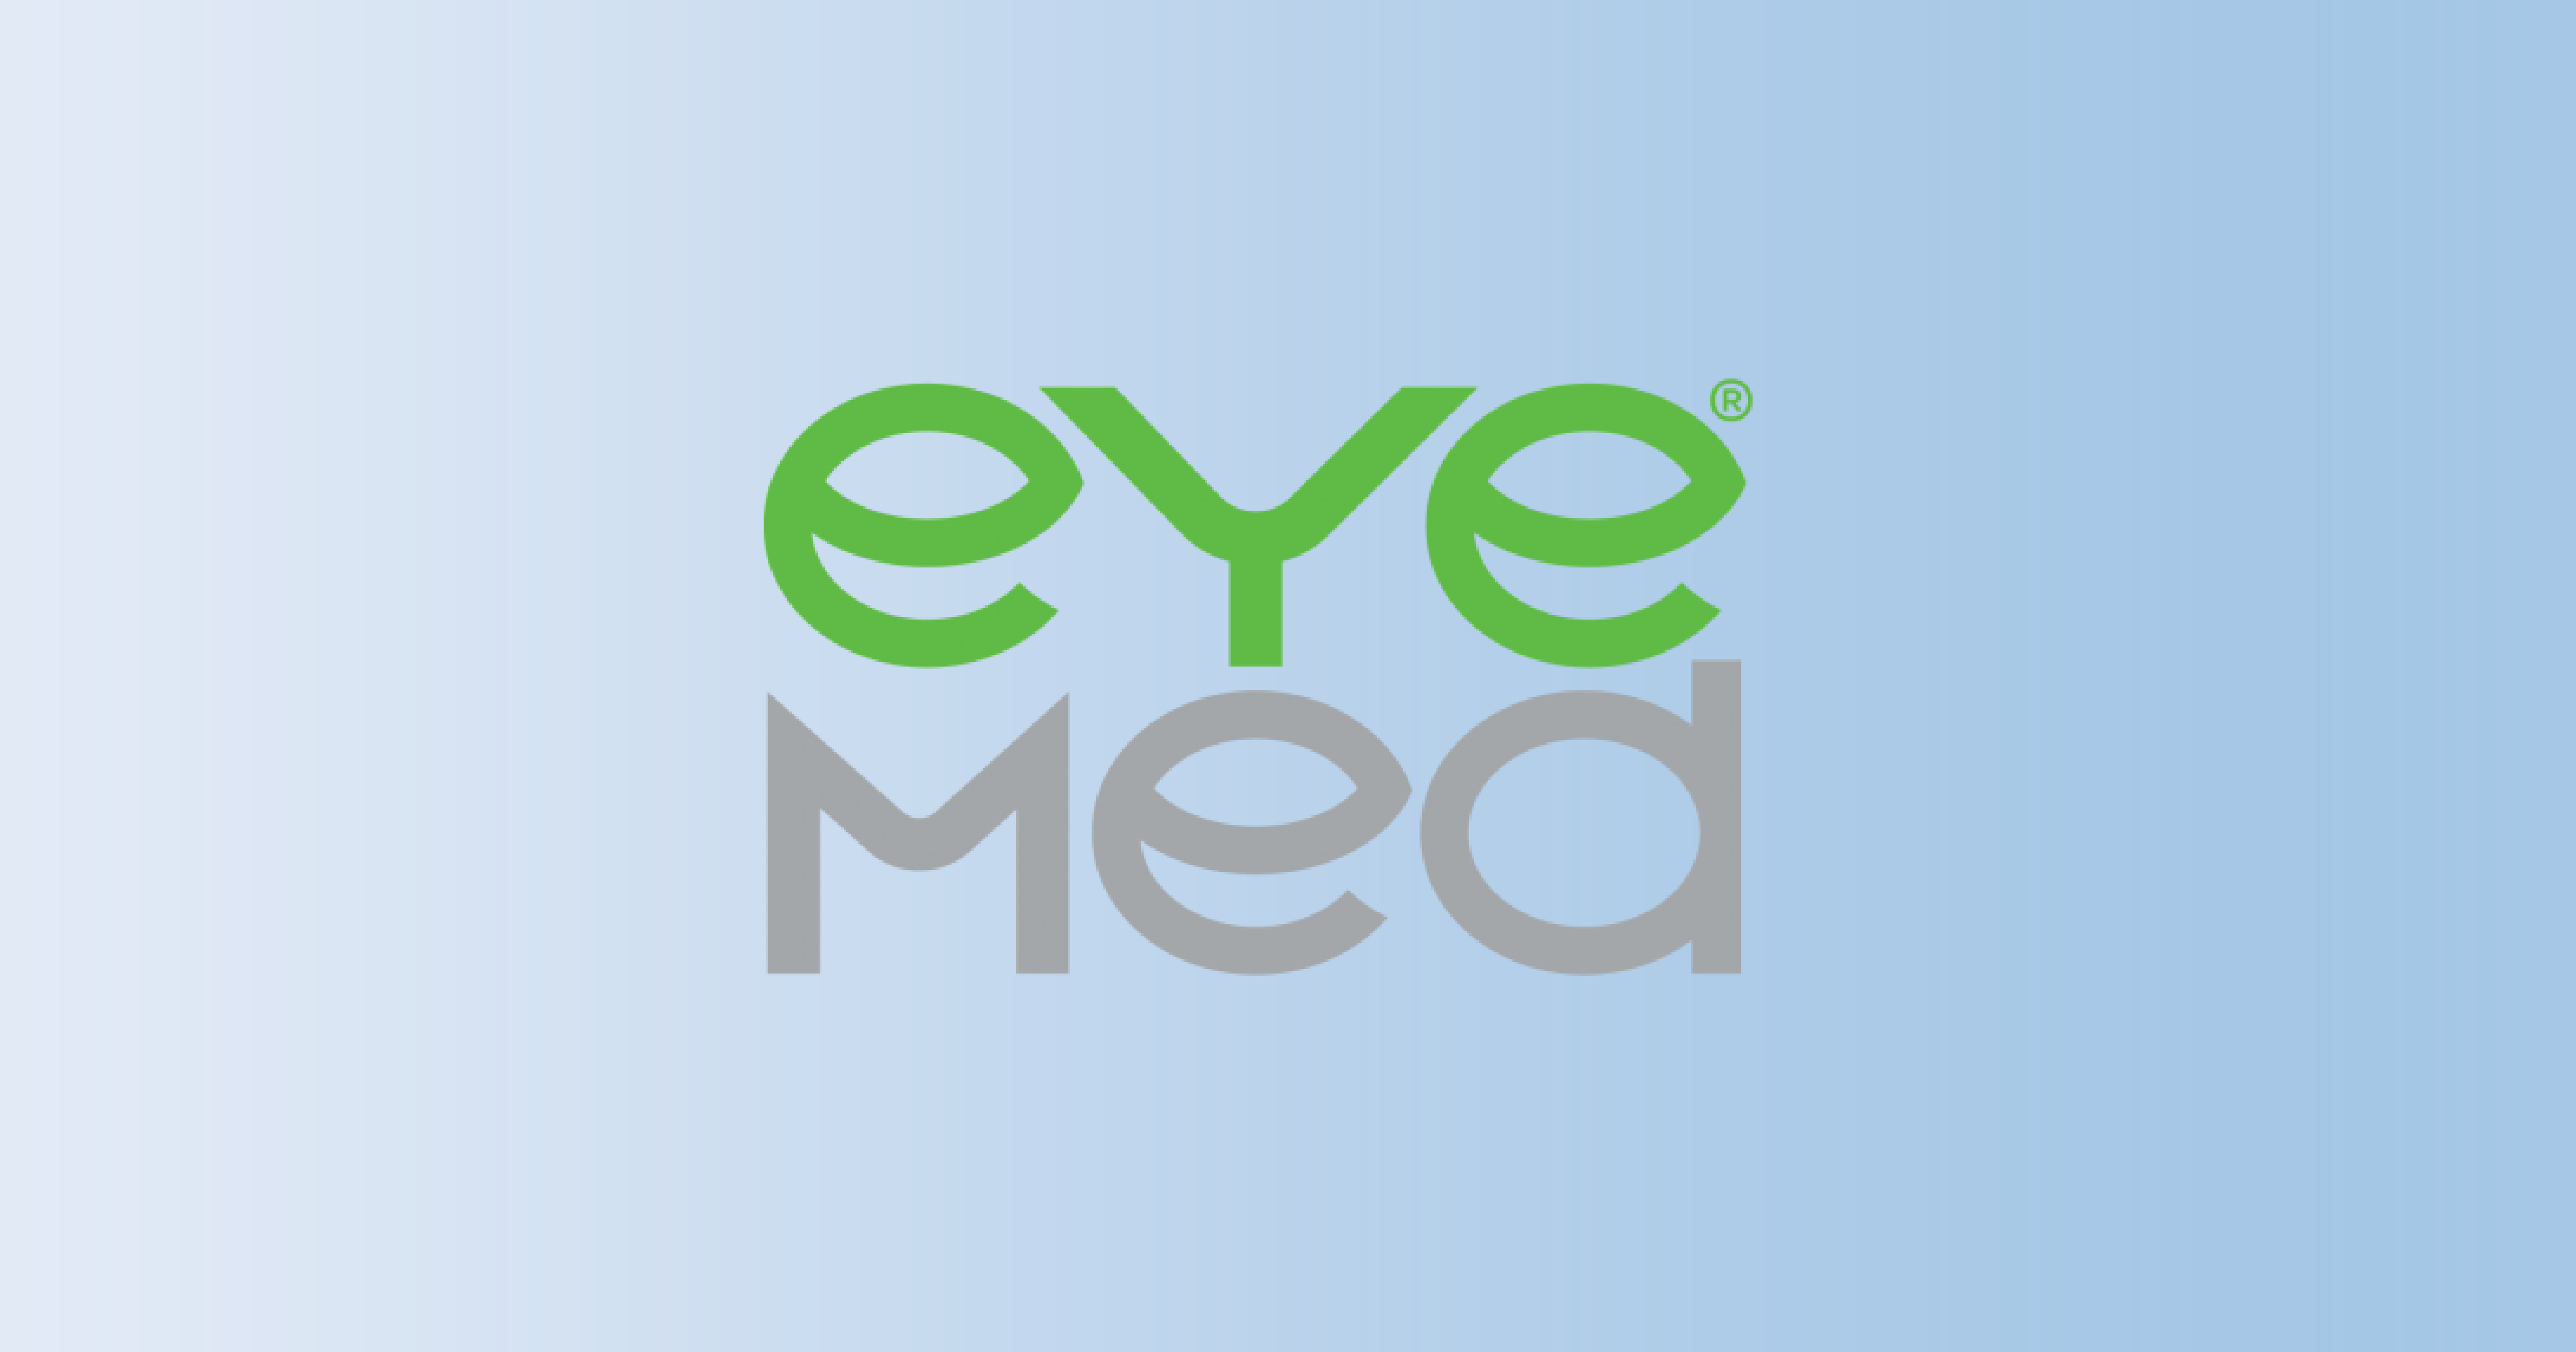 Eye Med logo